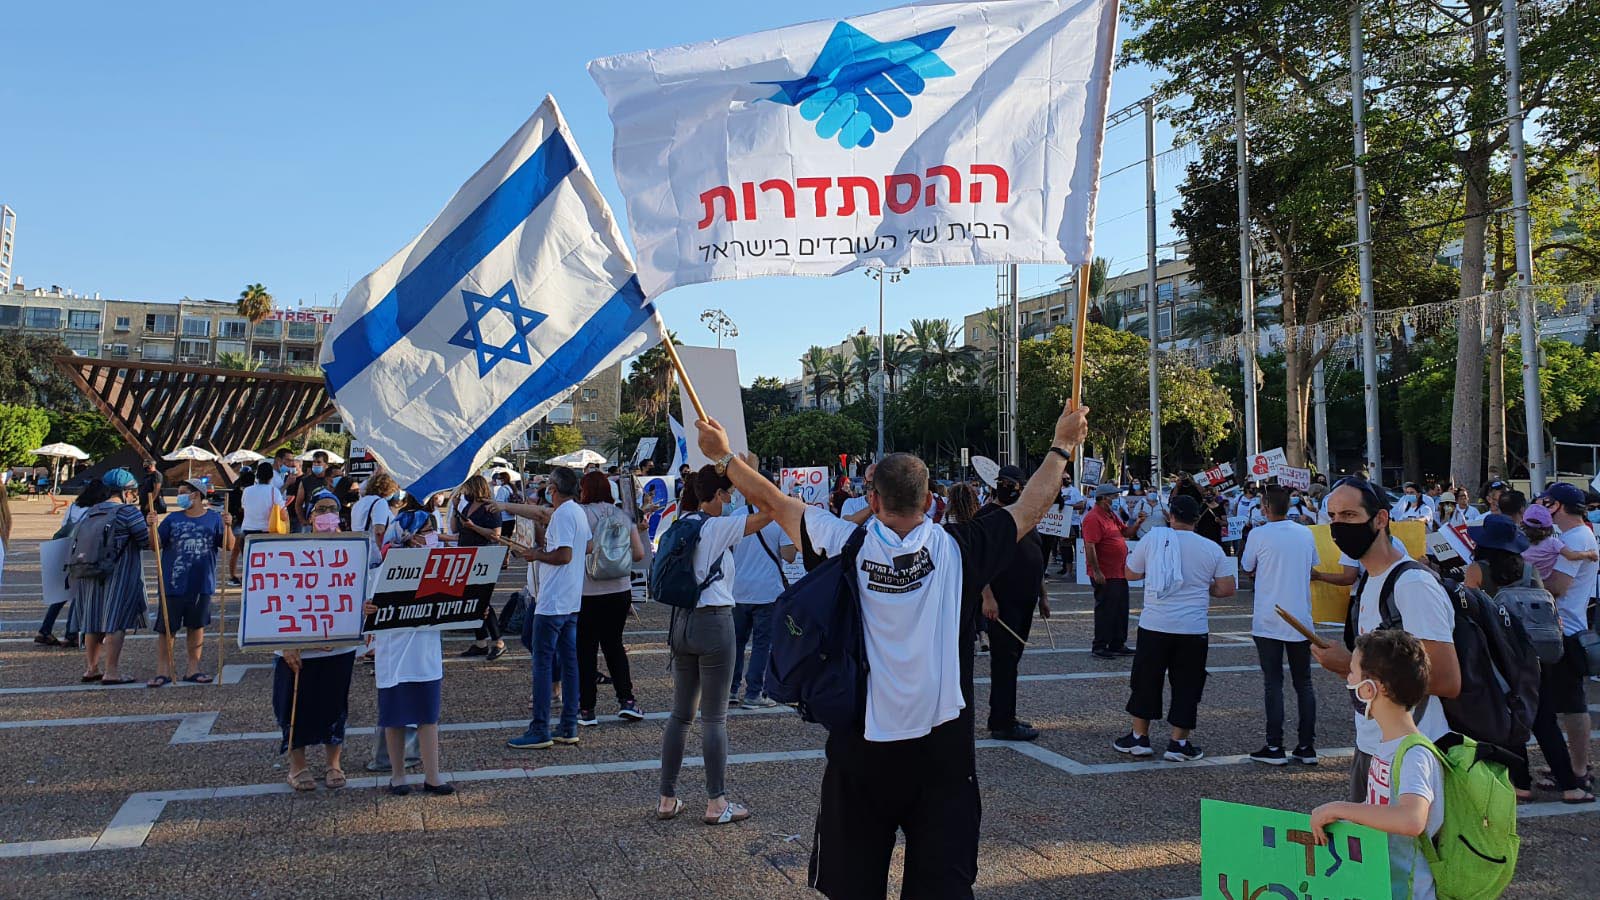 مظاهرة موظفي مشروع كاريف في ميدان رابين في تل أبيب (تصوير: وحدة الناطق بلسان نقابة العمال الهستدروت)